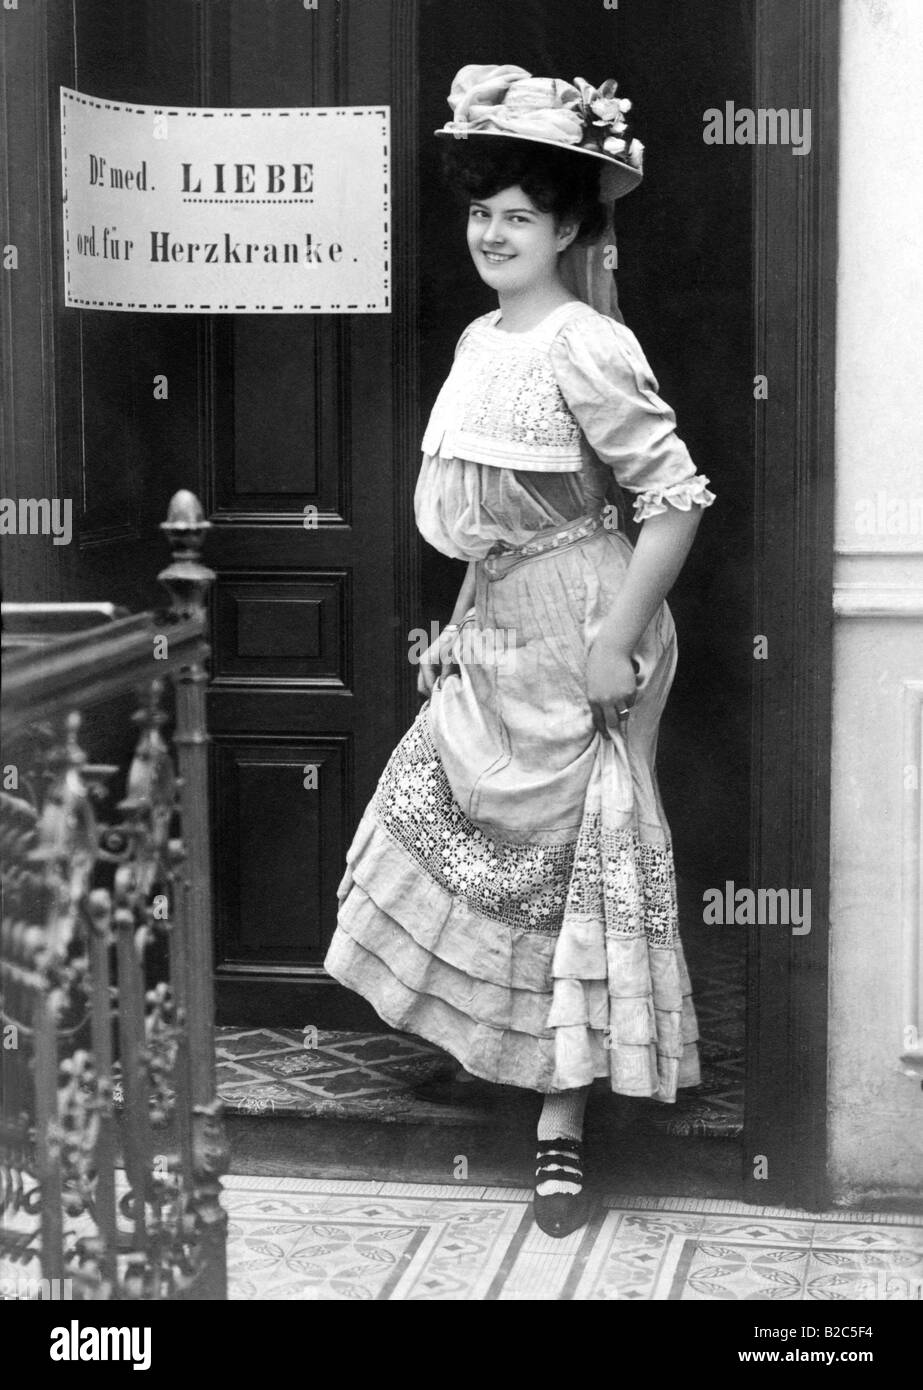 Donna di fronte alla pratica del dottor Liebe, il Dottor amore, foto storiche da circa 1900 Foto Stock